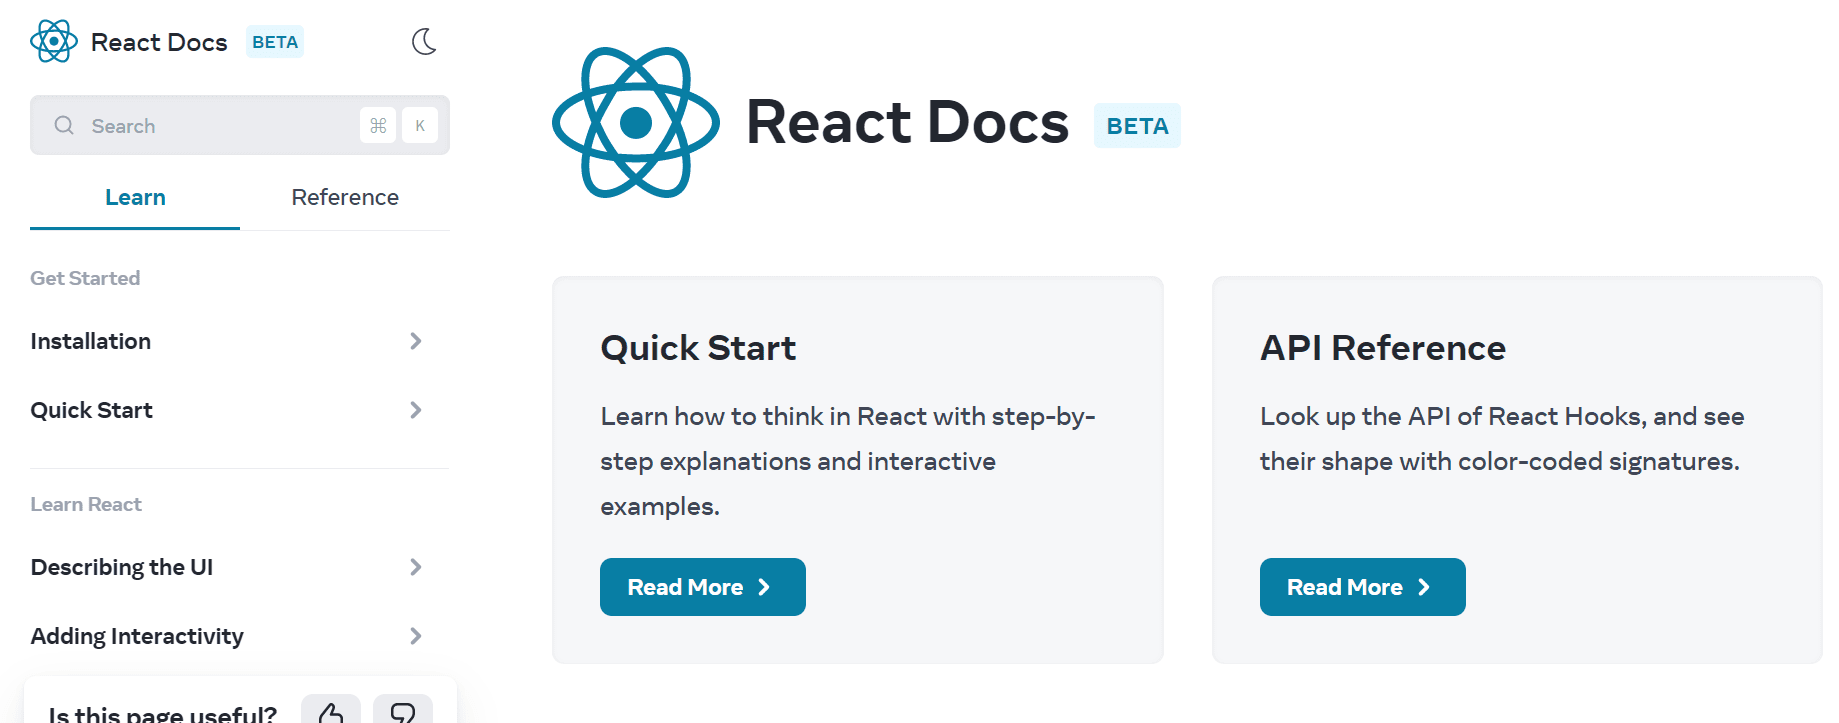 React Docs